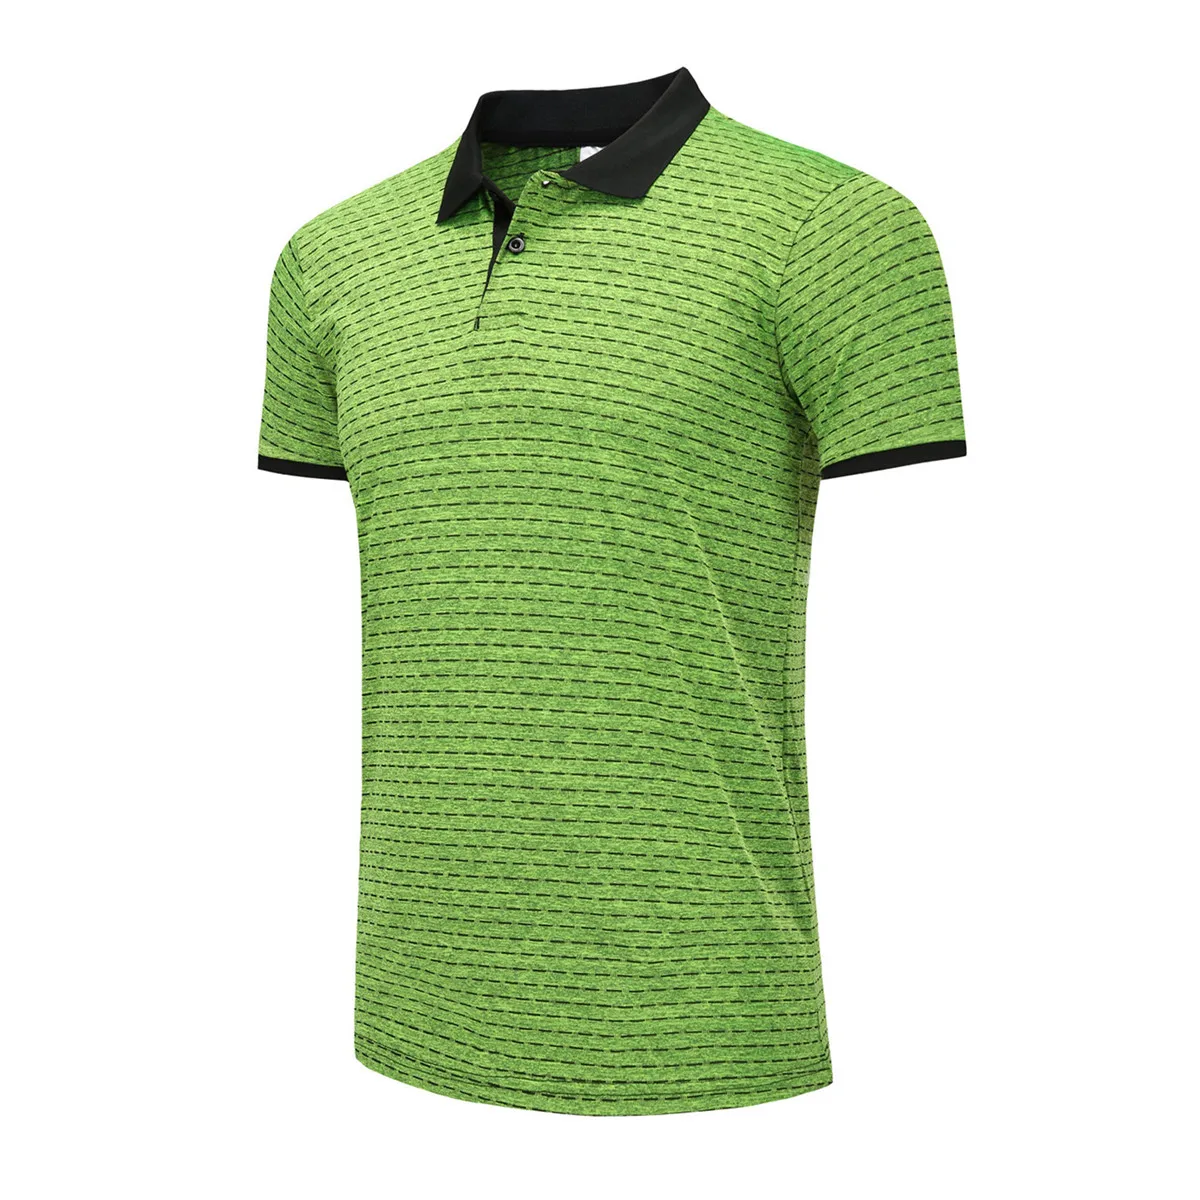 Мужская рубашка p o l o для настольного тенниса Goif уличная спортивная одежда комплект для бега футболка спортивная одежда для бадминтона футбол Джерси для спортзала одежда